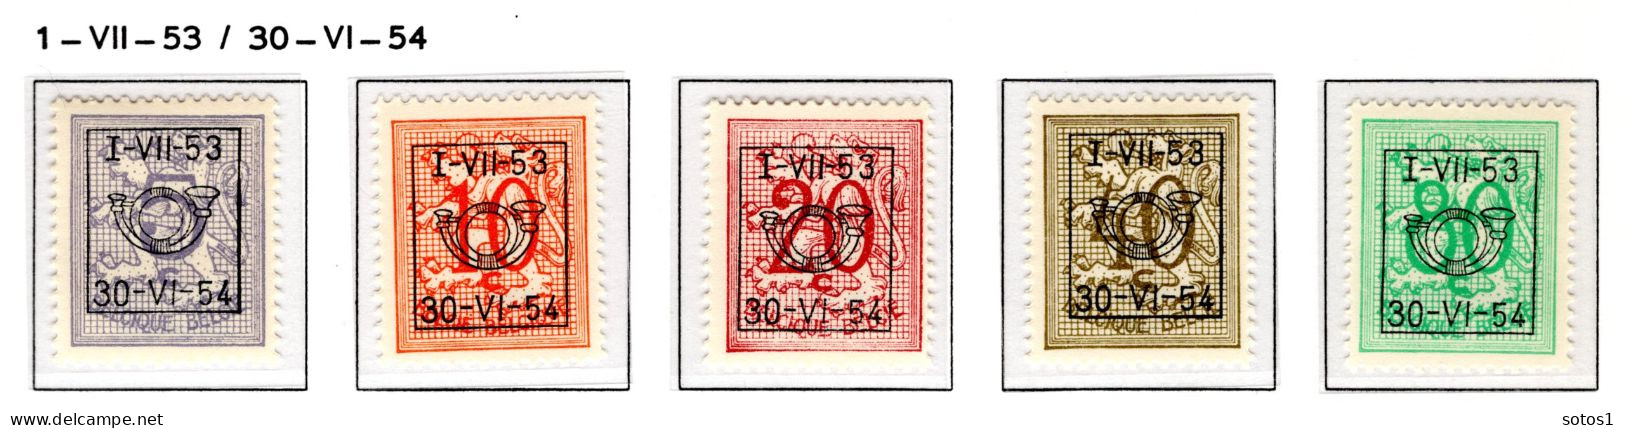 PRE635/639 MNH** 1953 - Cijfer Op Heraldieke Leeuw Type D - REEKS 45 - Typografisch 1951-80 (Cijfer Op Leeuw)